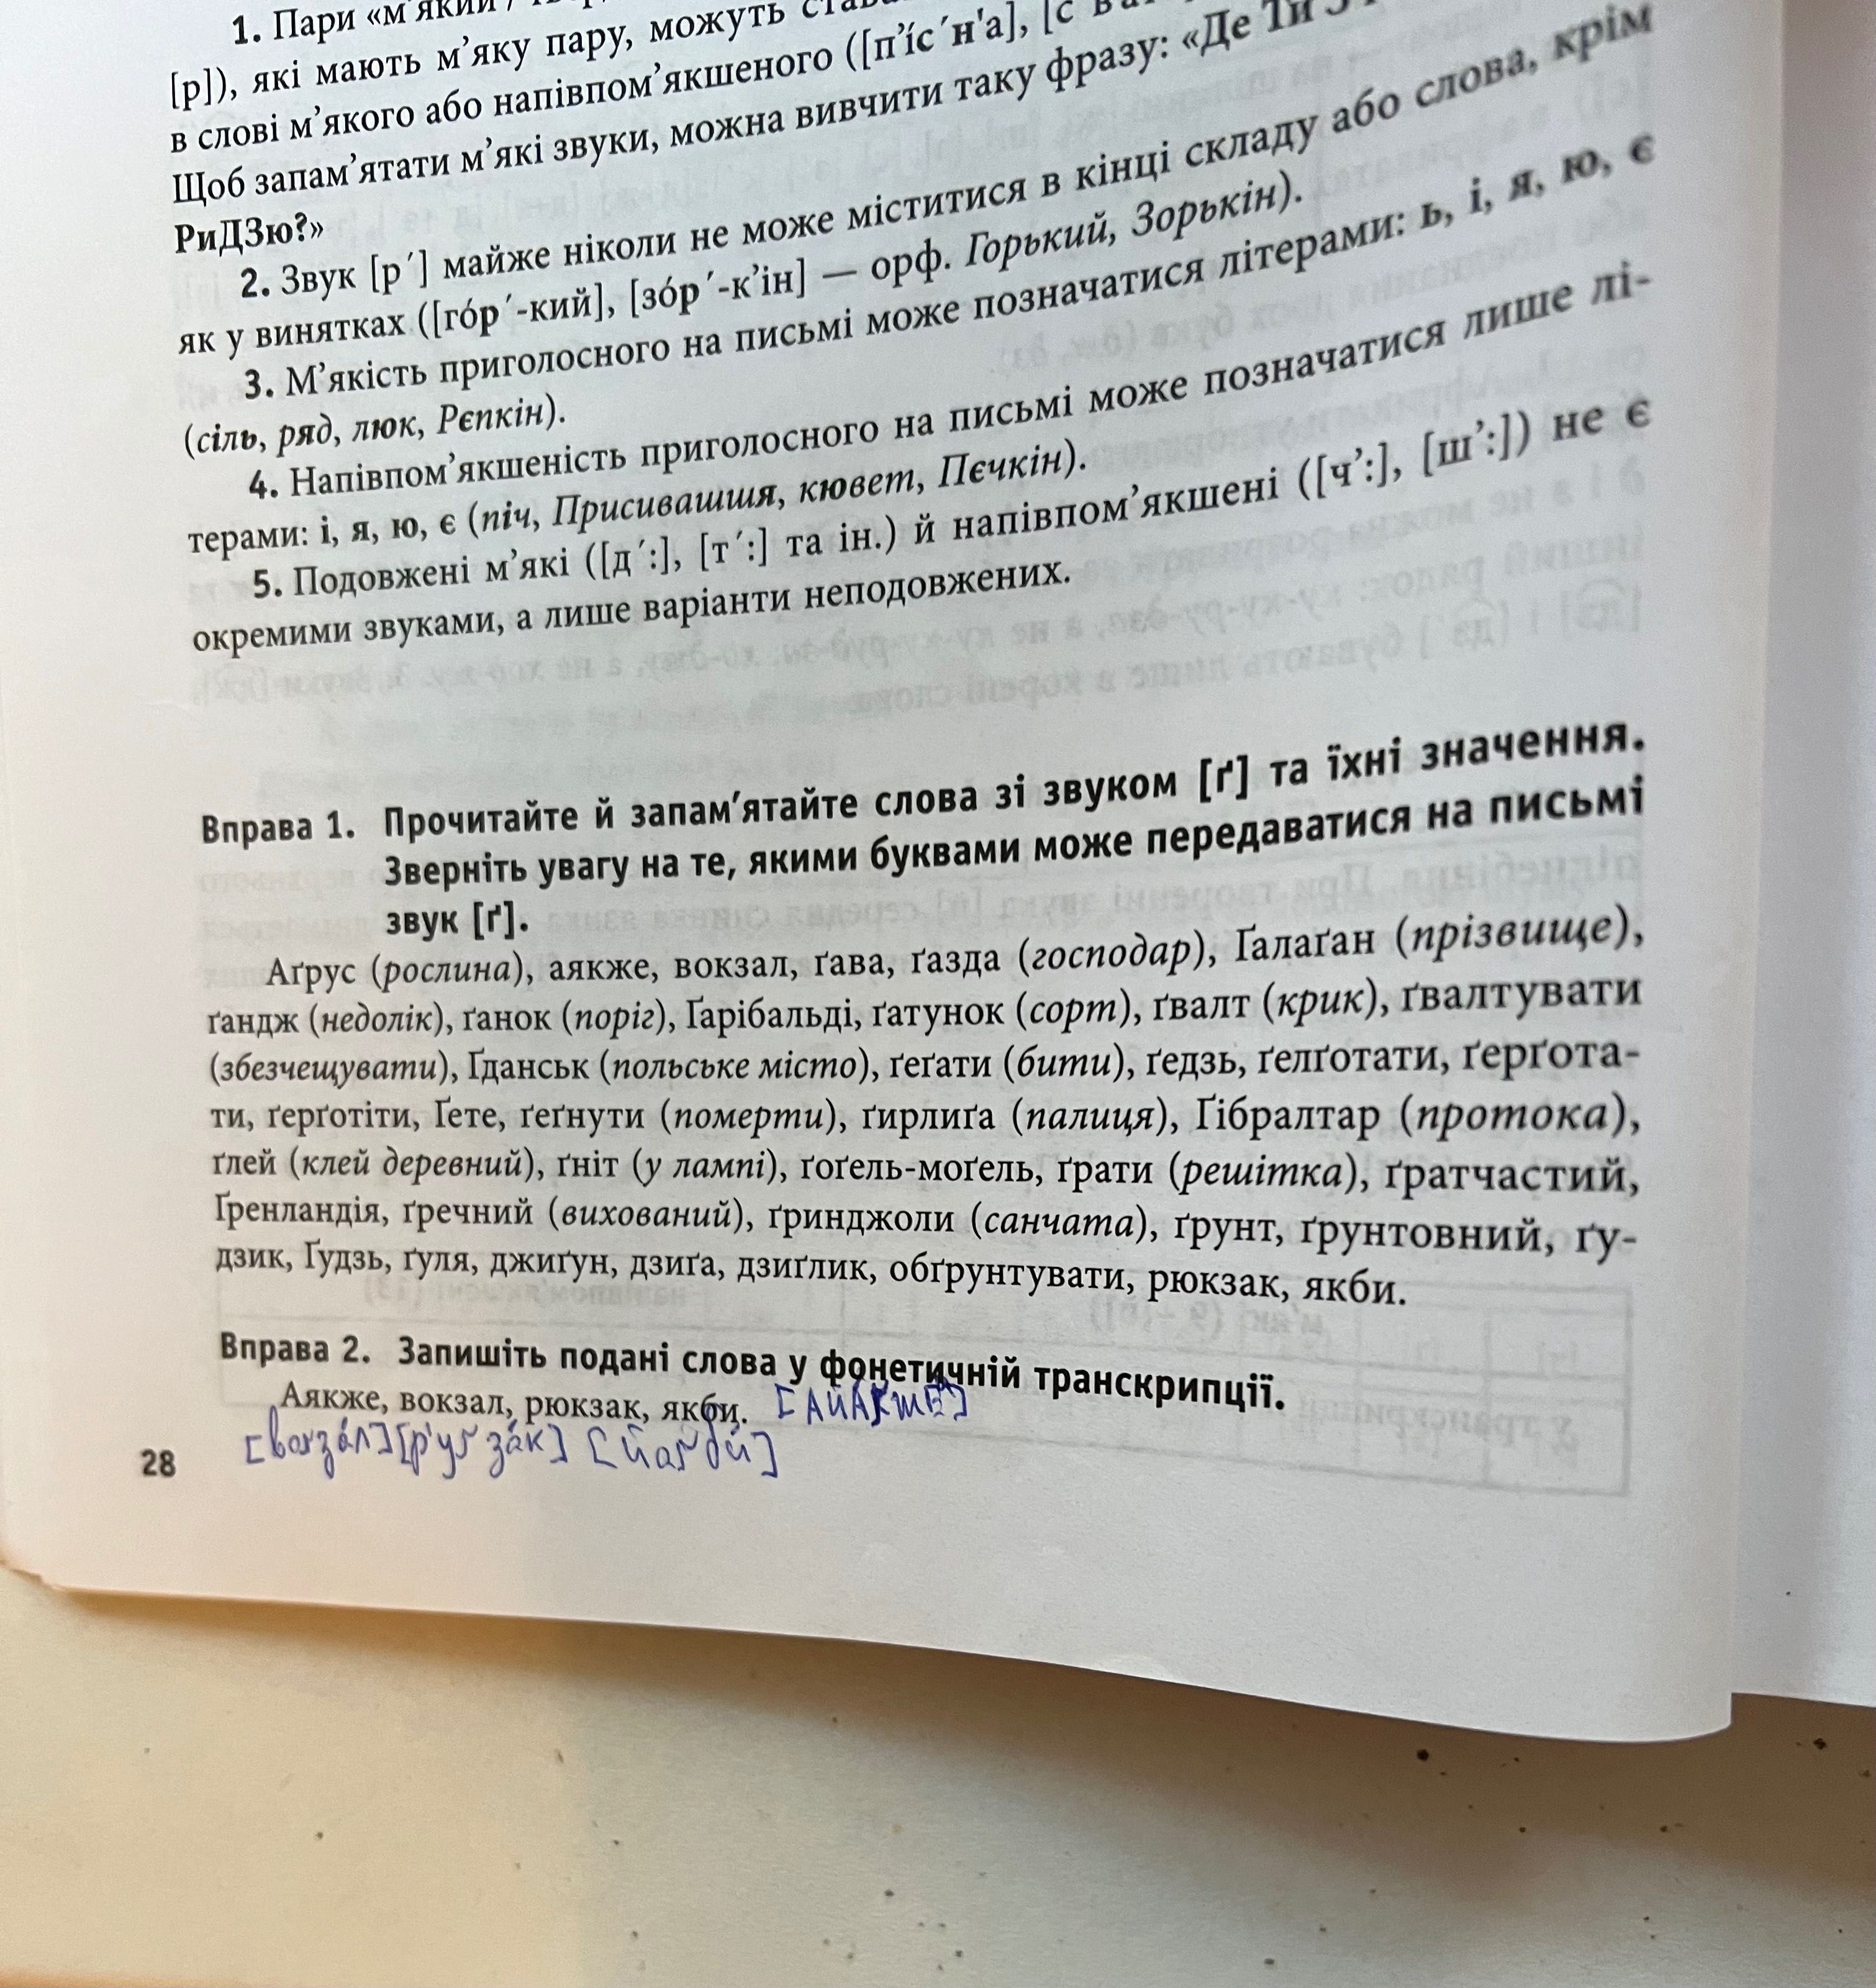 Підручник українська мова та література зно/дпа 2022